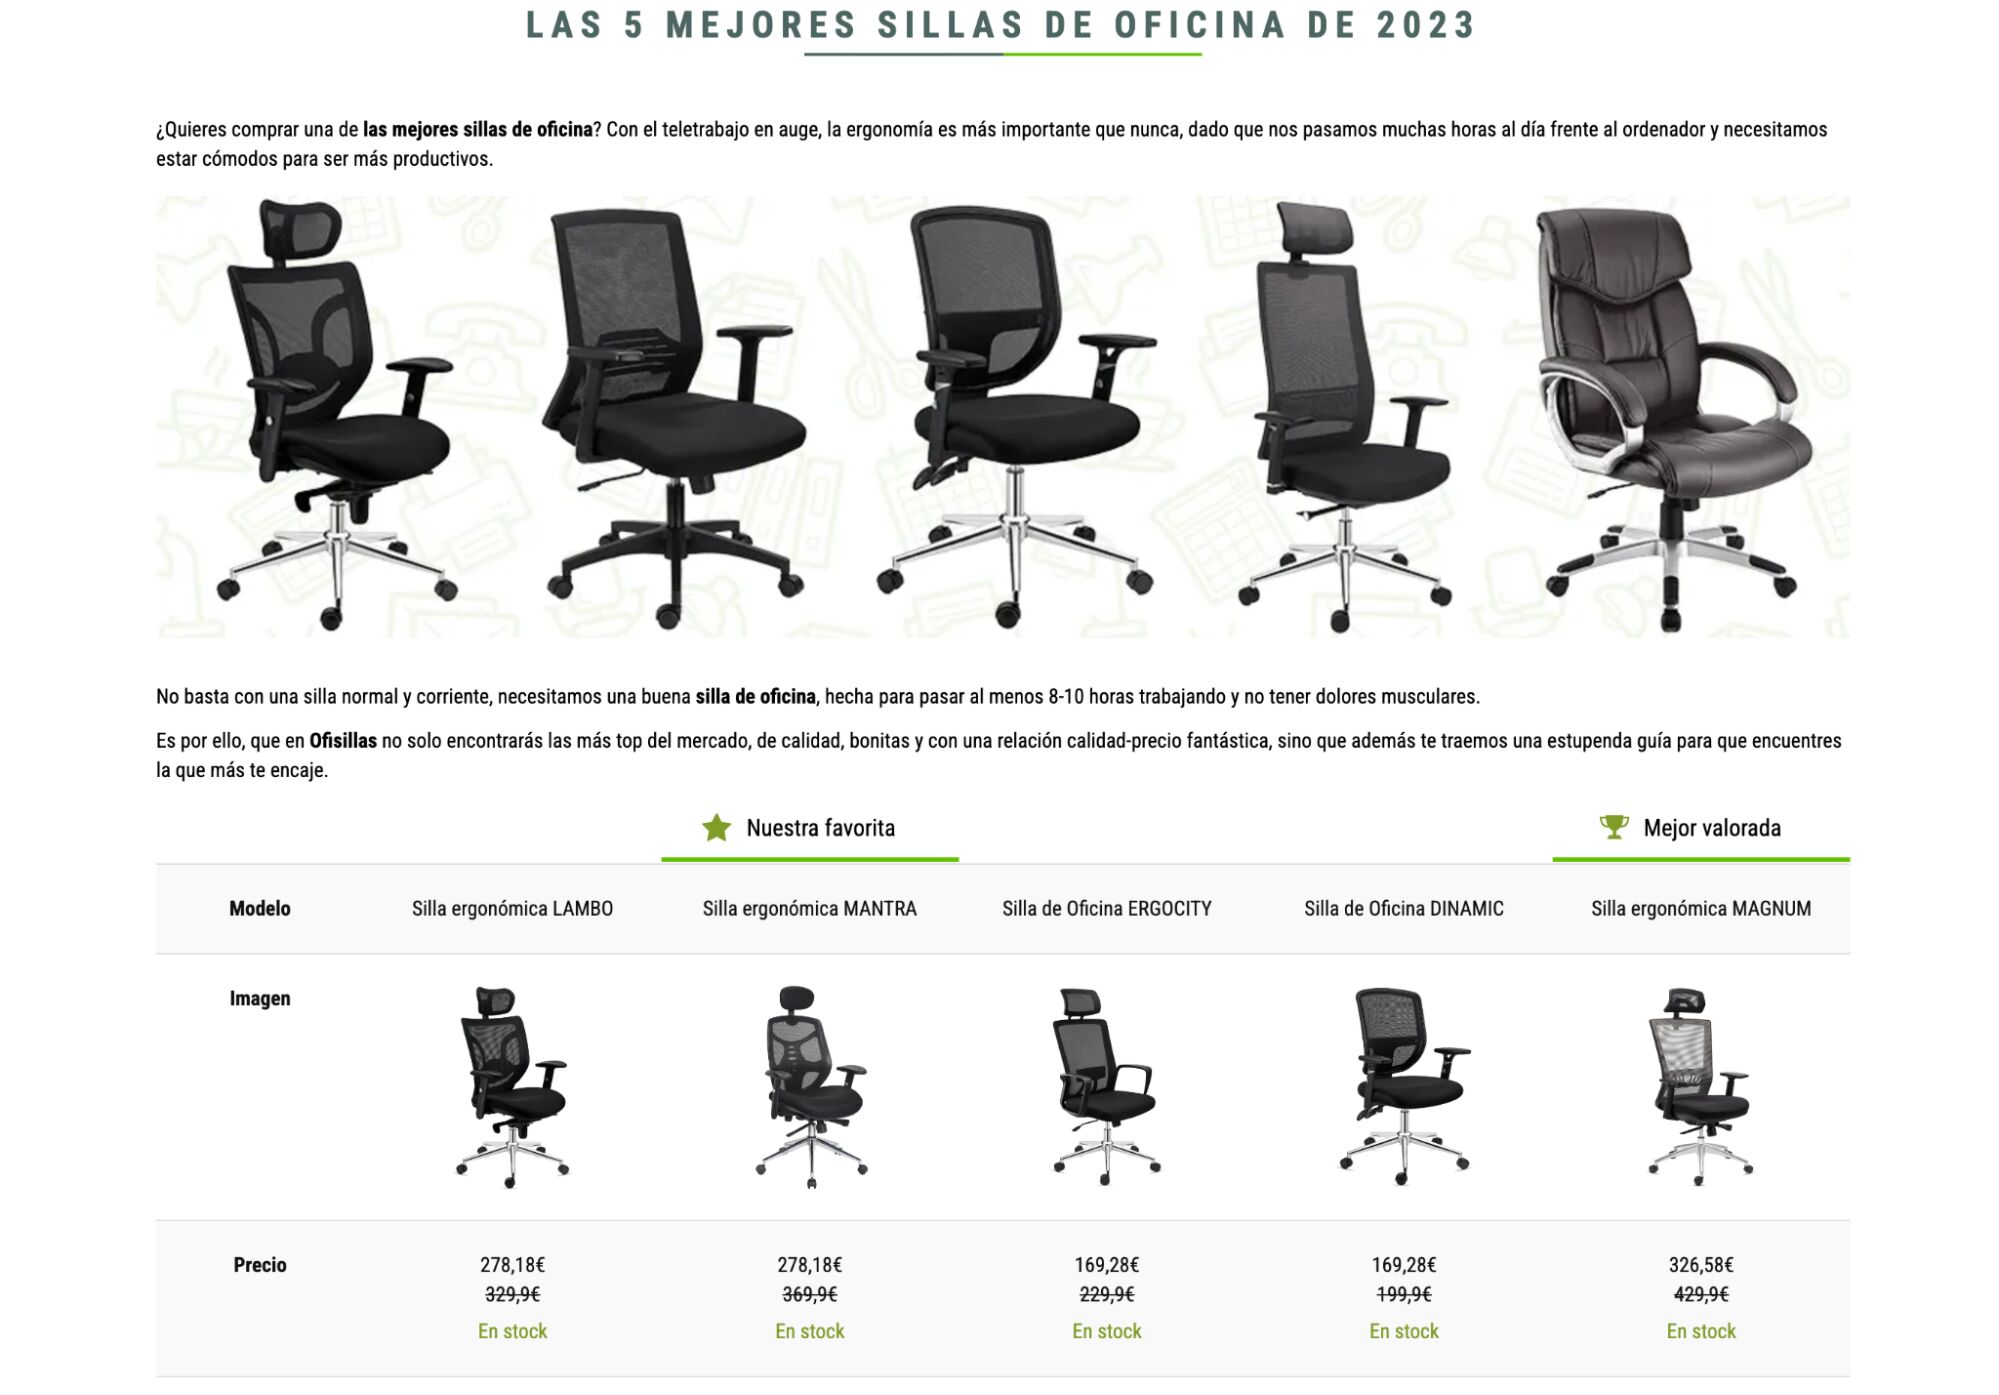 Post mostrando las 5 mejores sillas de oficina de 2023